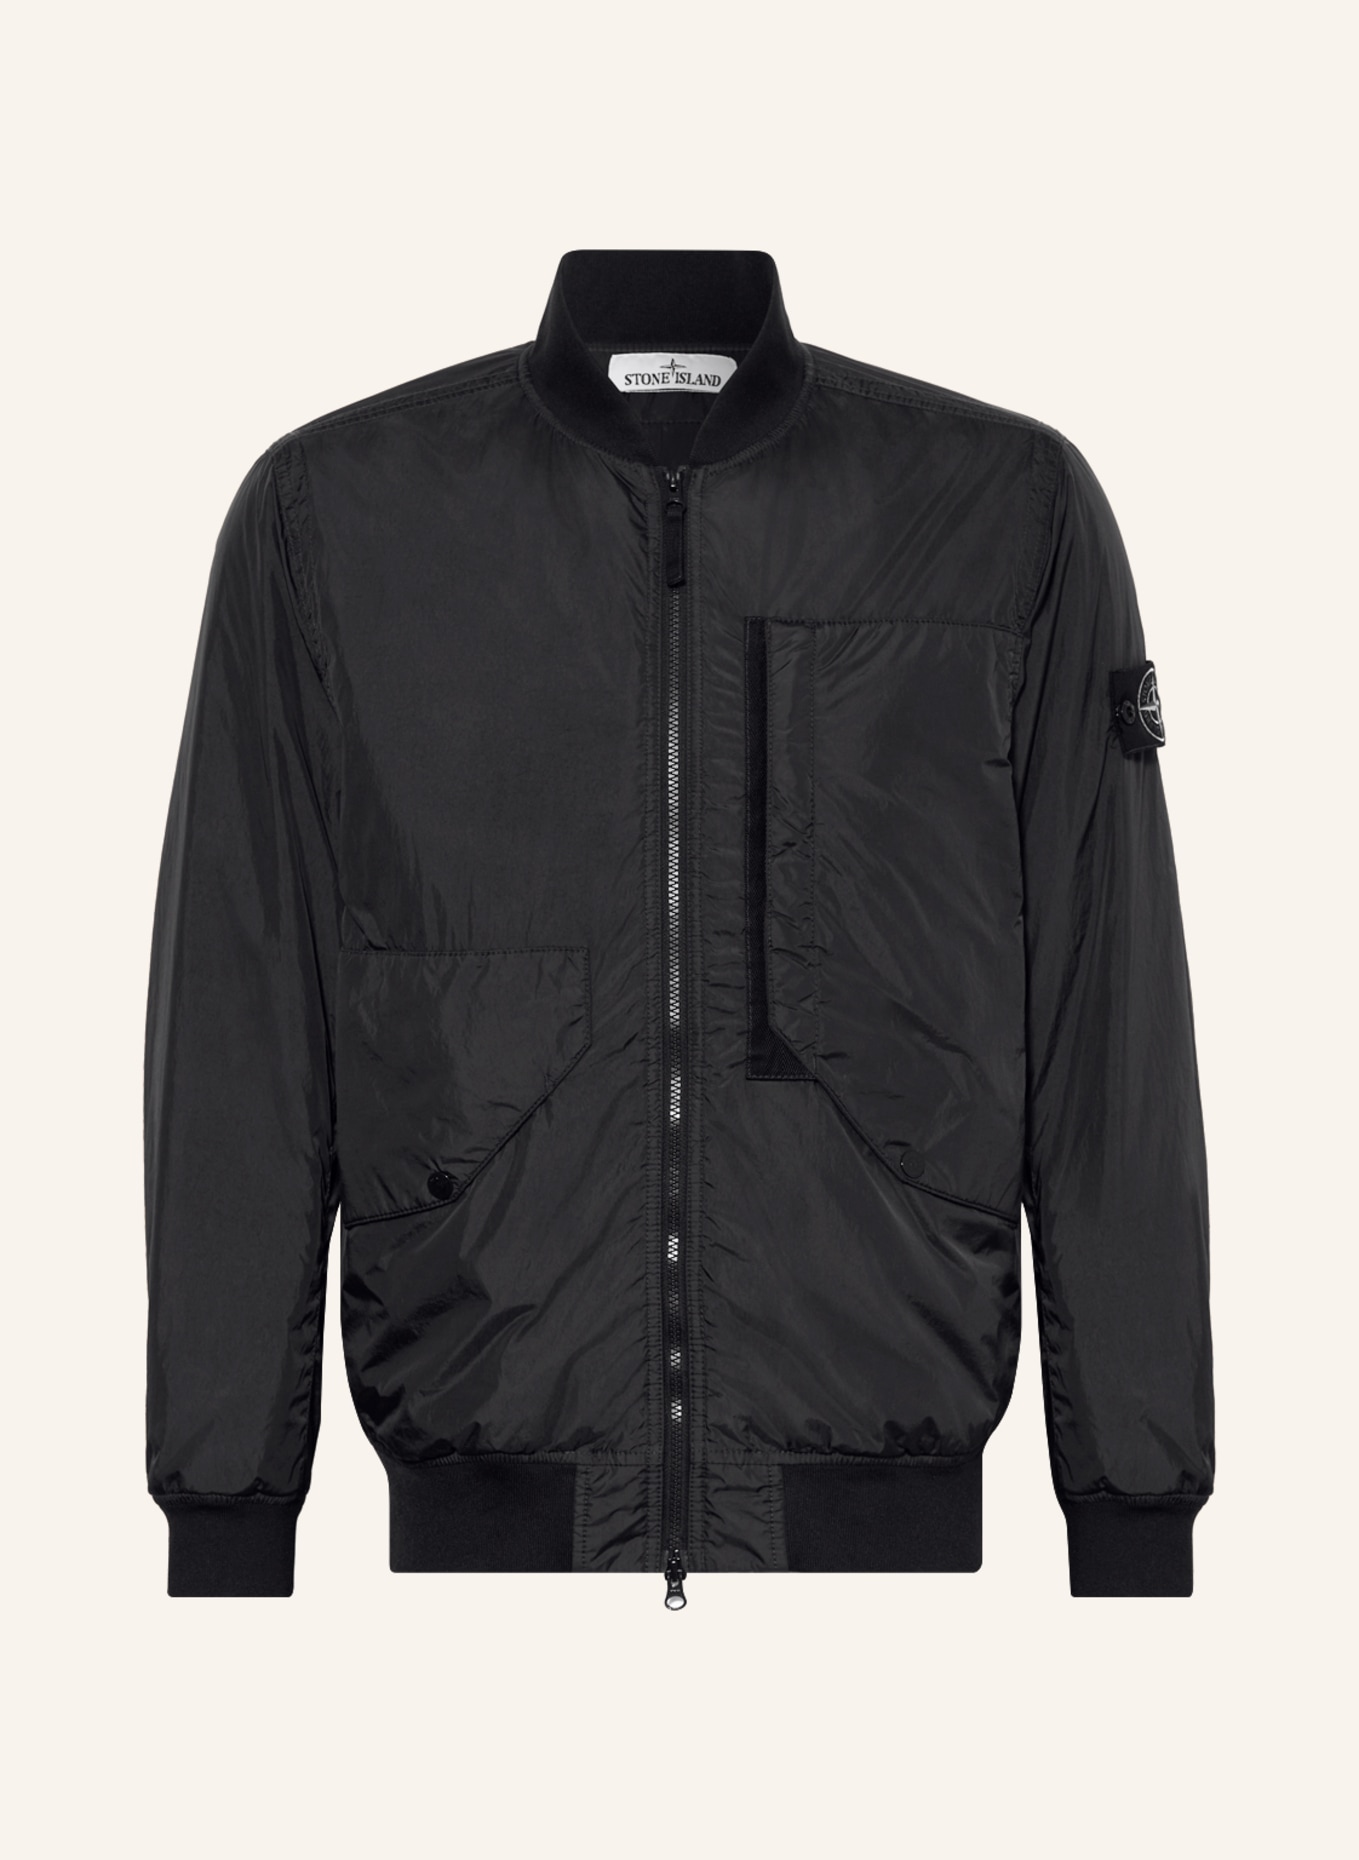 STONE ISLAND Bomber jacket, Color: BLACK (Image 1)